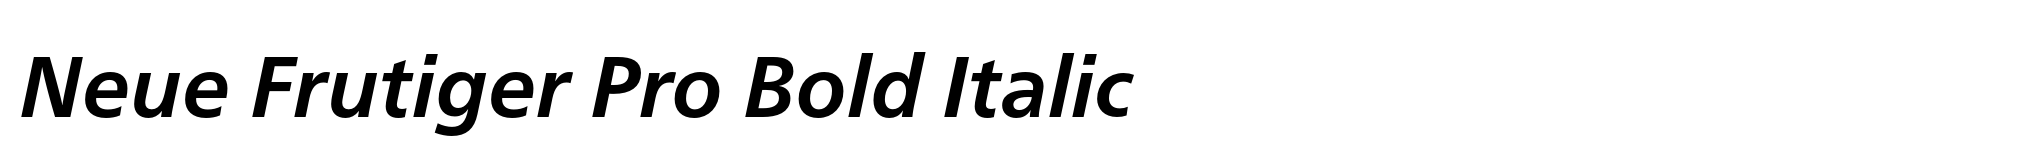 Neue Frutiger Pro Bold Italic image